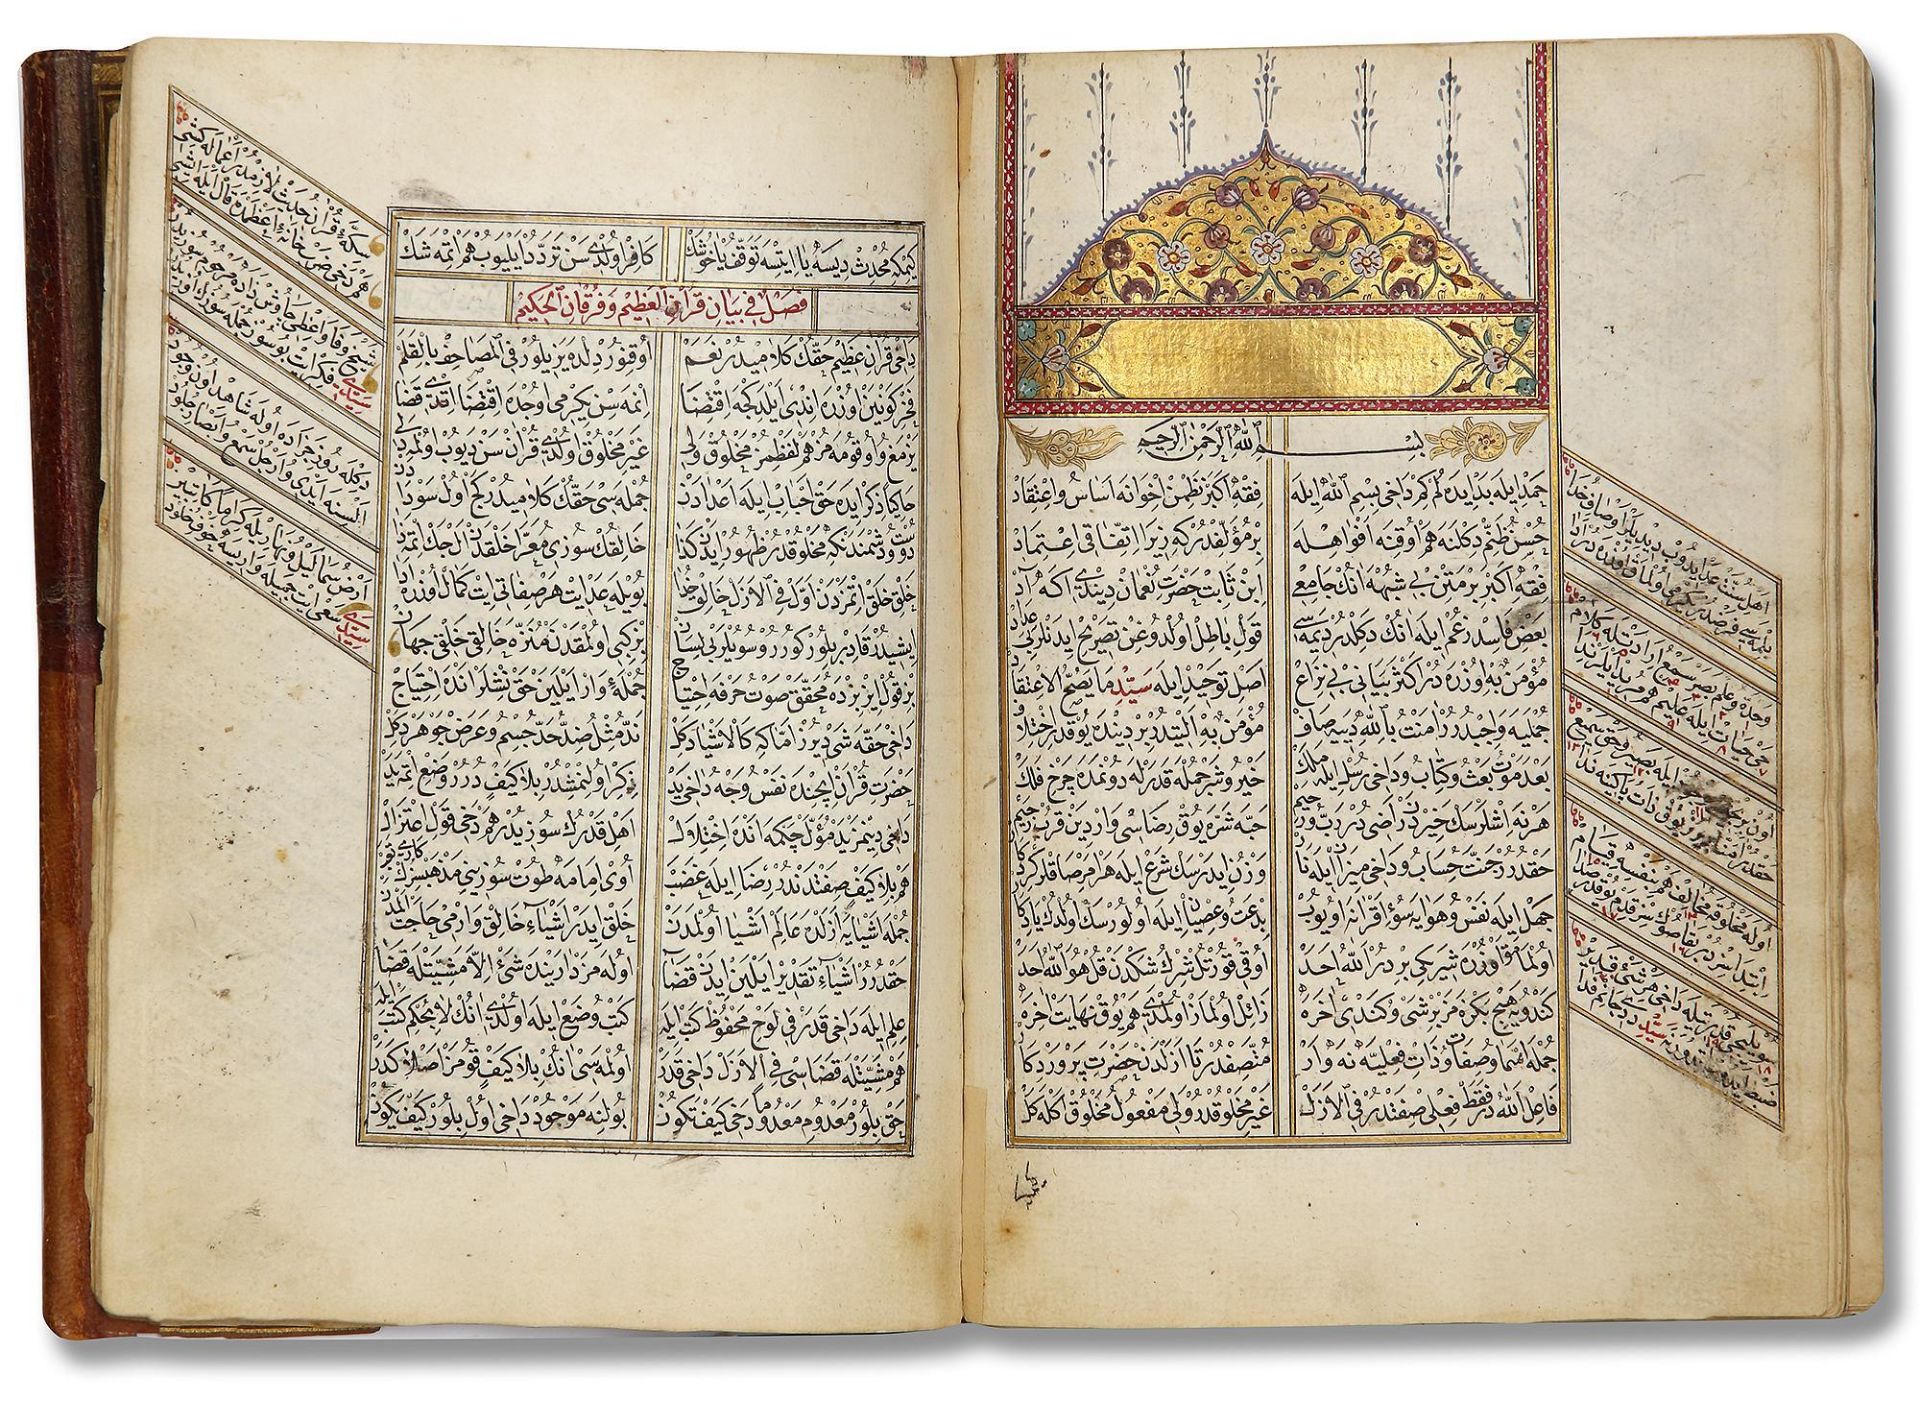 AN OTTOMAN MANUSCRIPT COPIED BY YUSUF IBN ABD AL-WAHHAB 1099 AH/1688 AD - Image 11 of 16